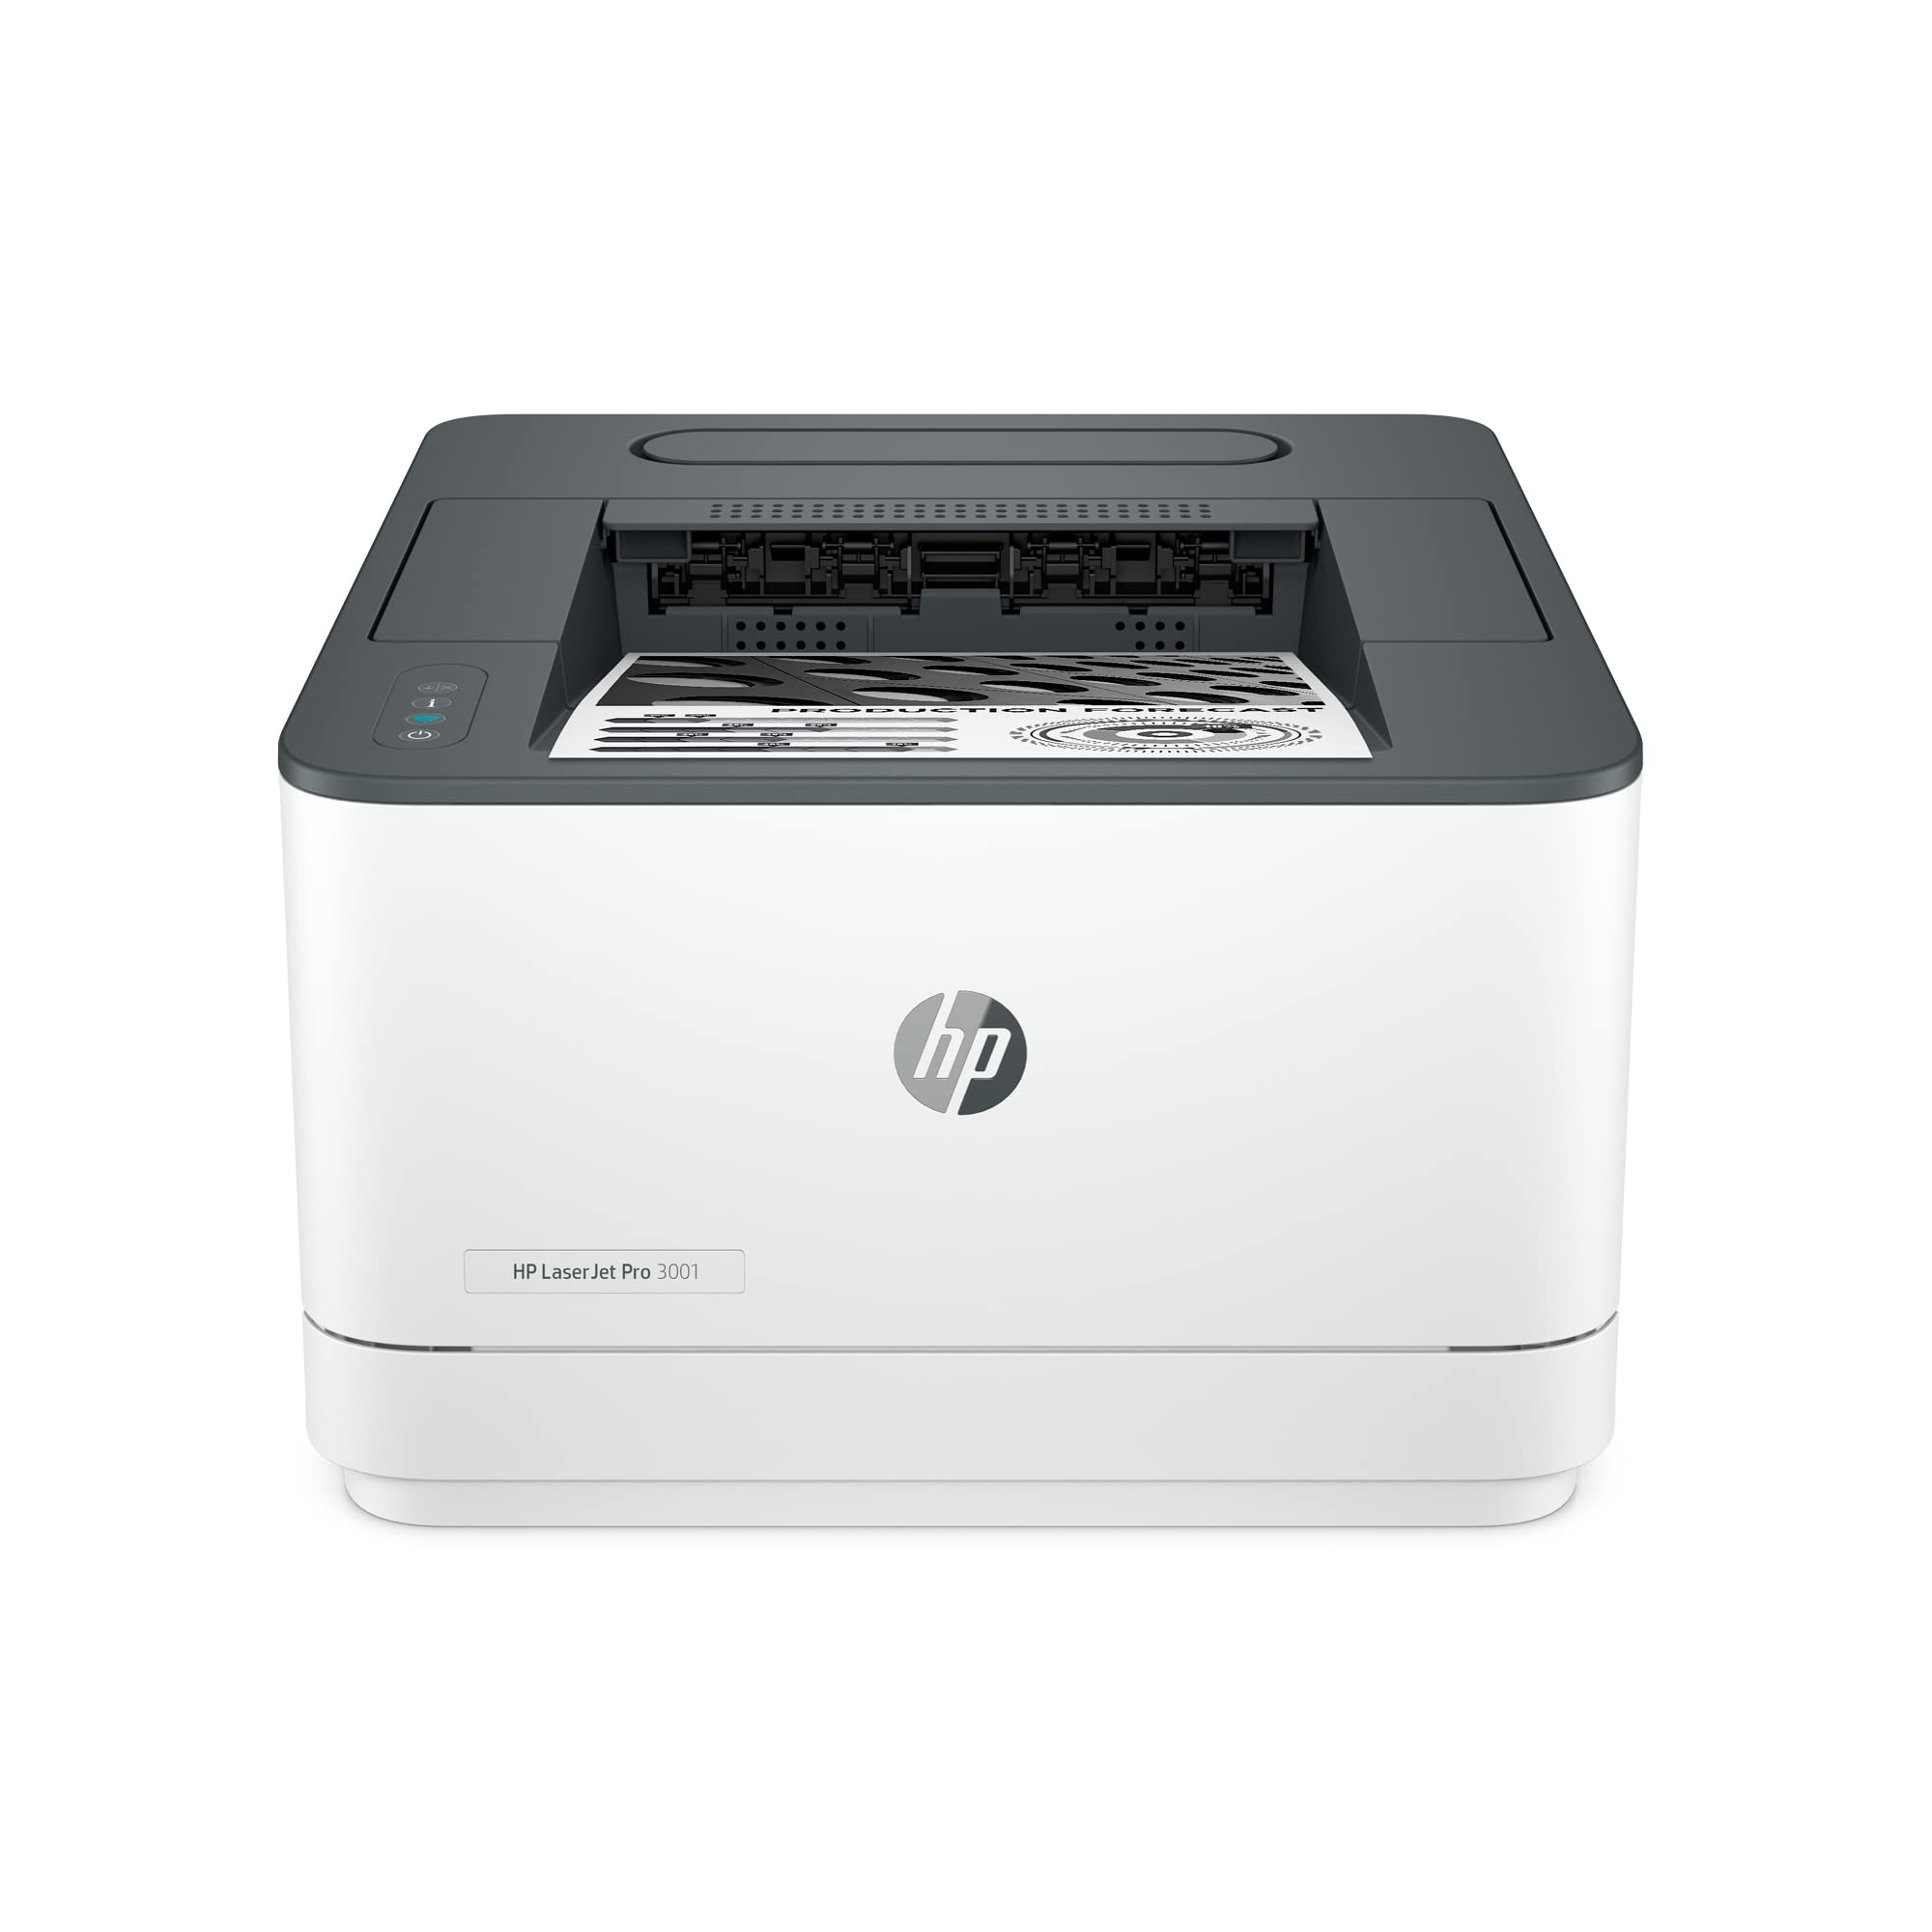 HP Laserjet Pro 4001ne 黑白打印机 + 智能办公功能...